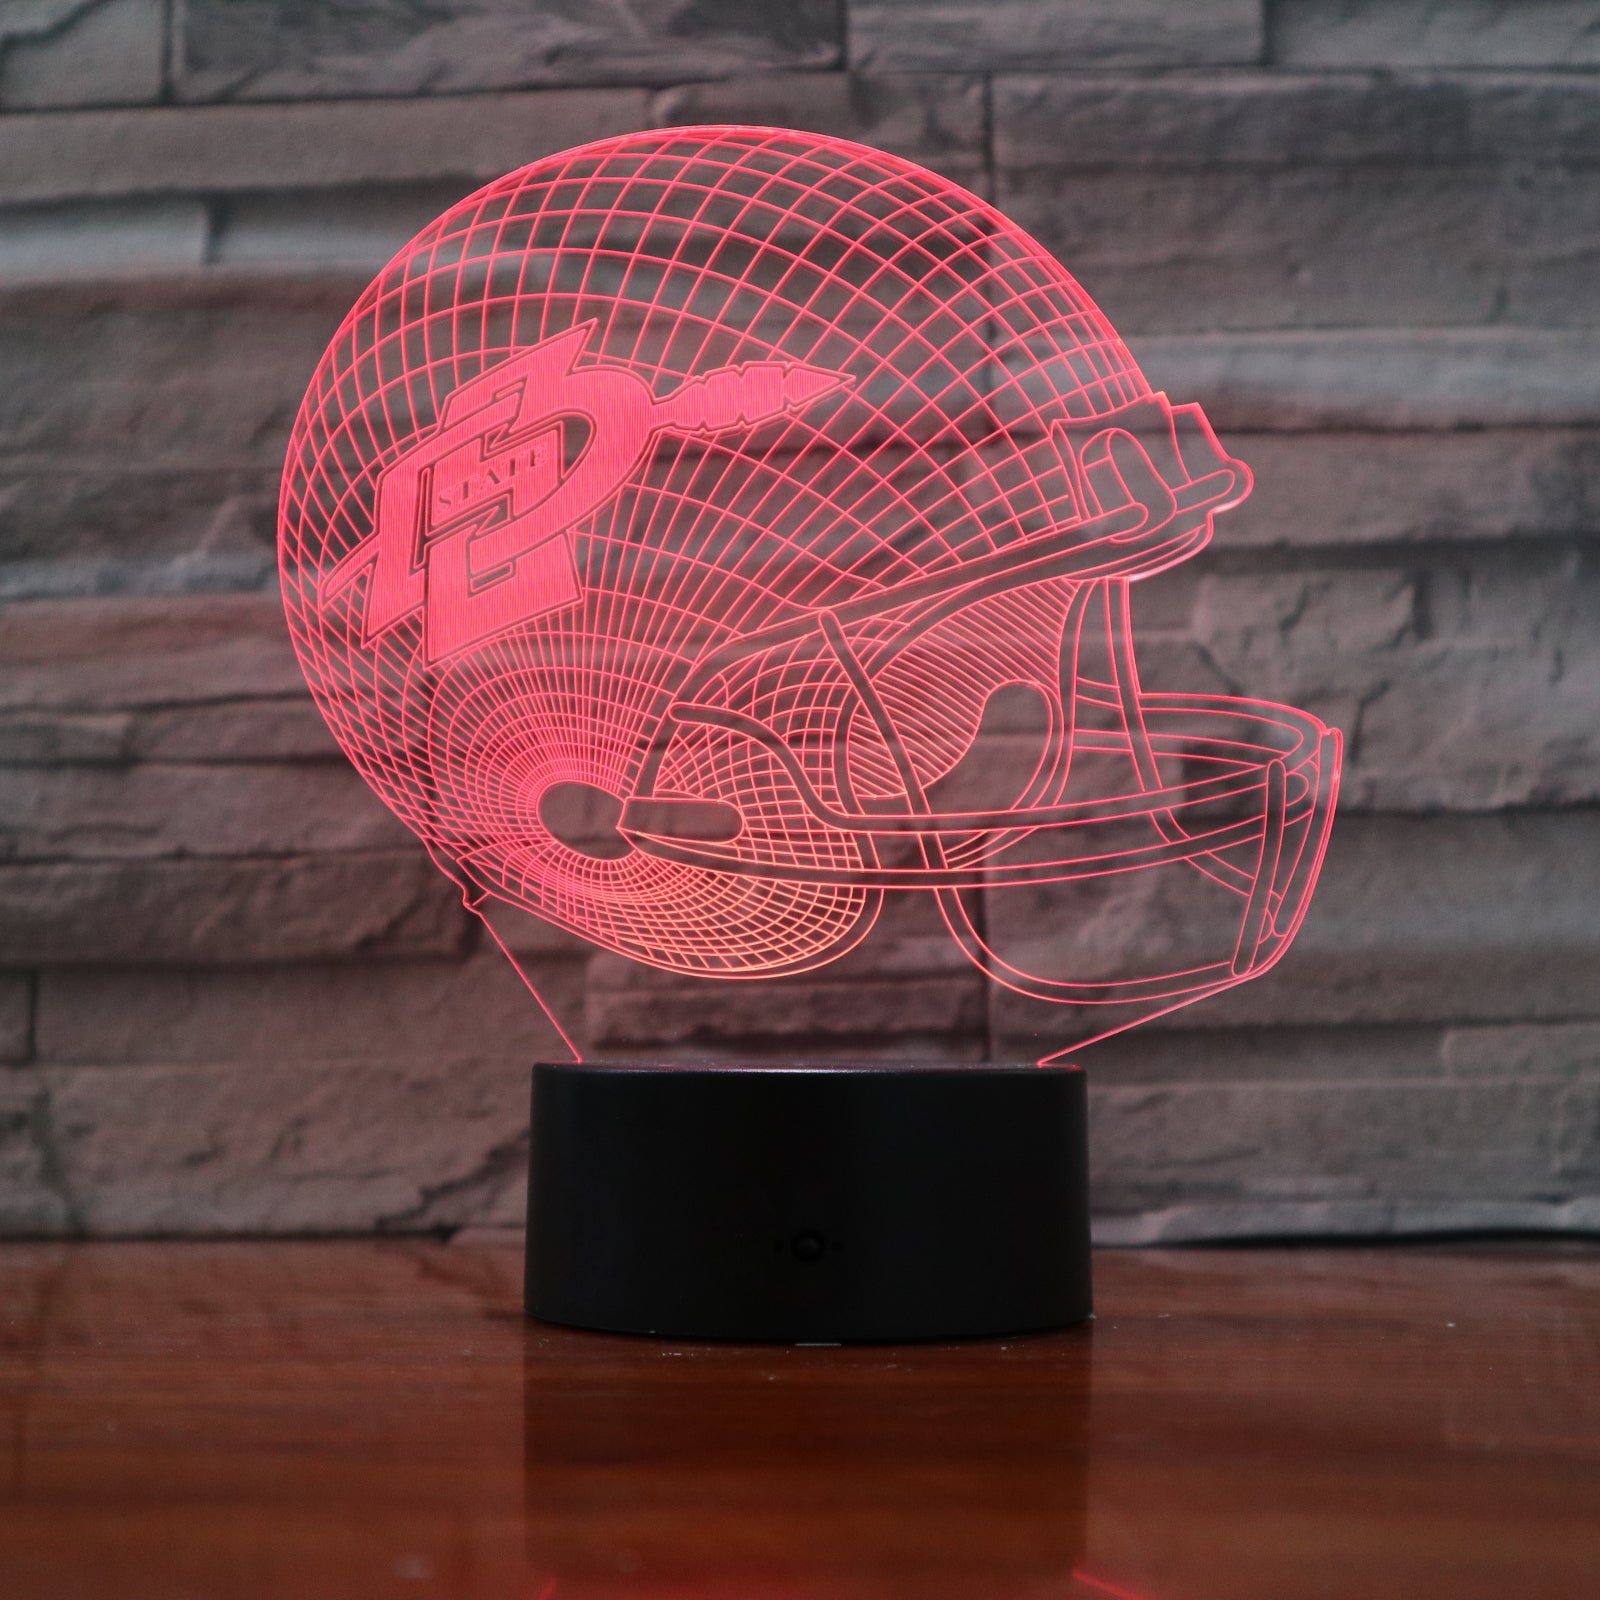 American Football Helmet 4 - 3D Optical Illusion LED Lamp Hologram